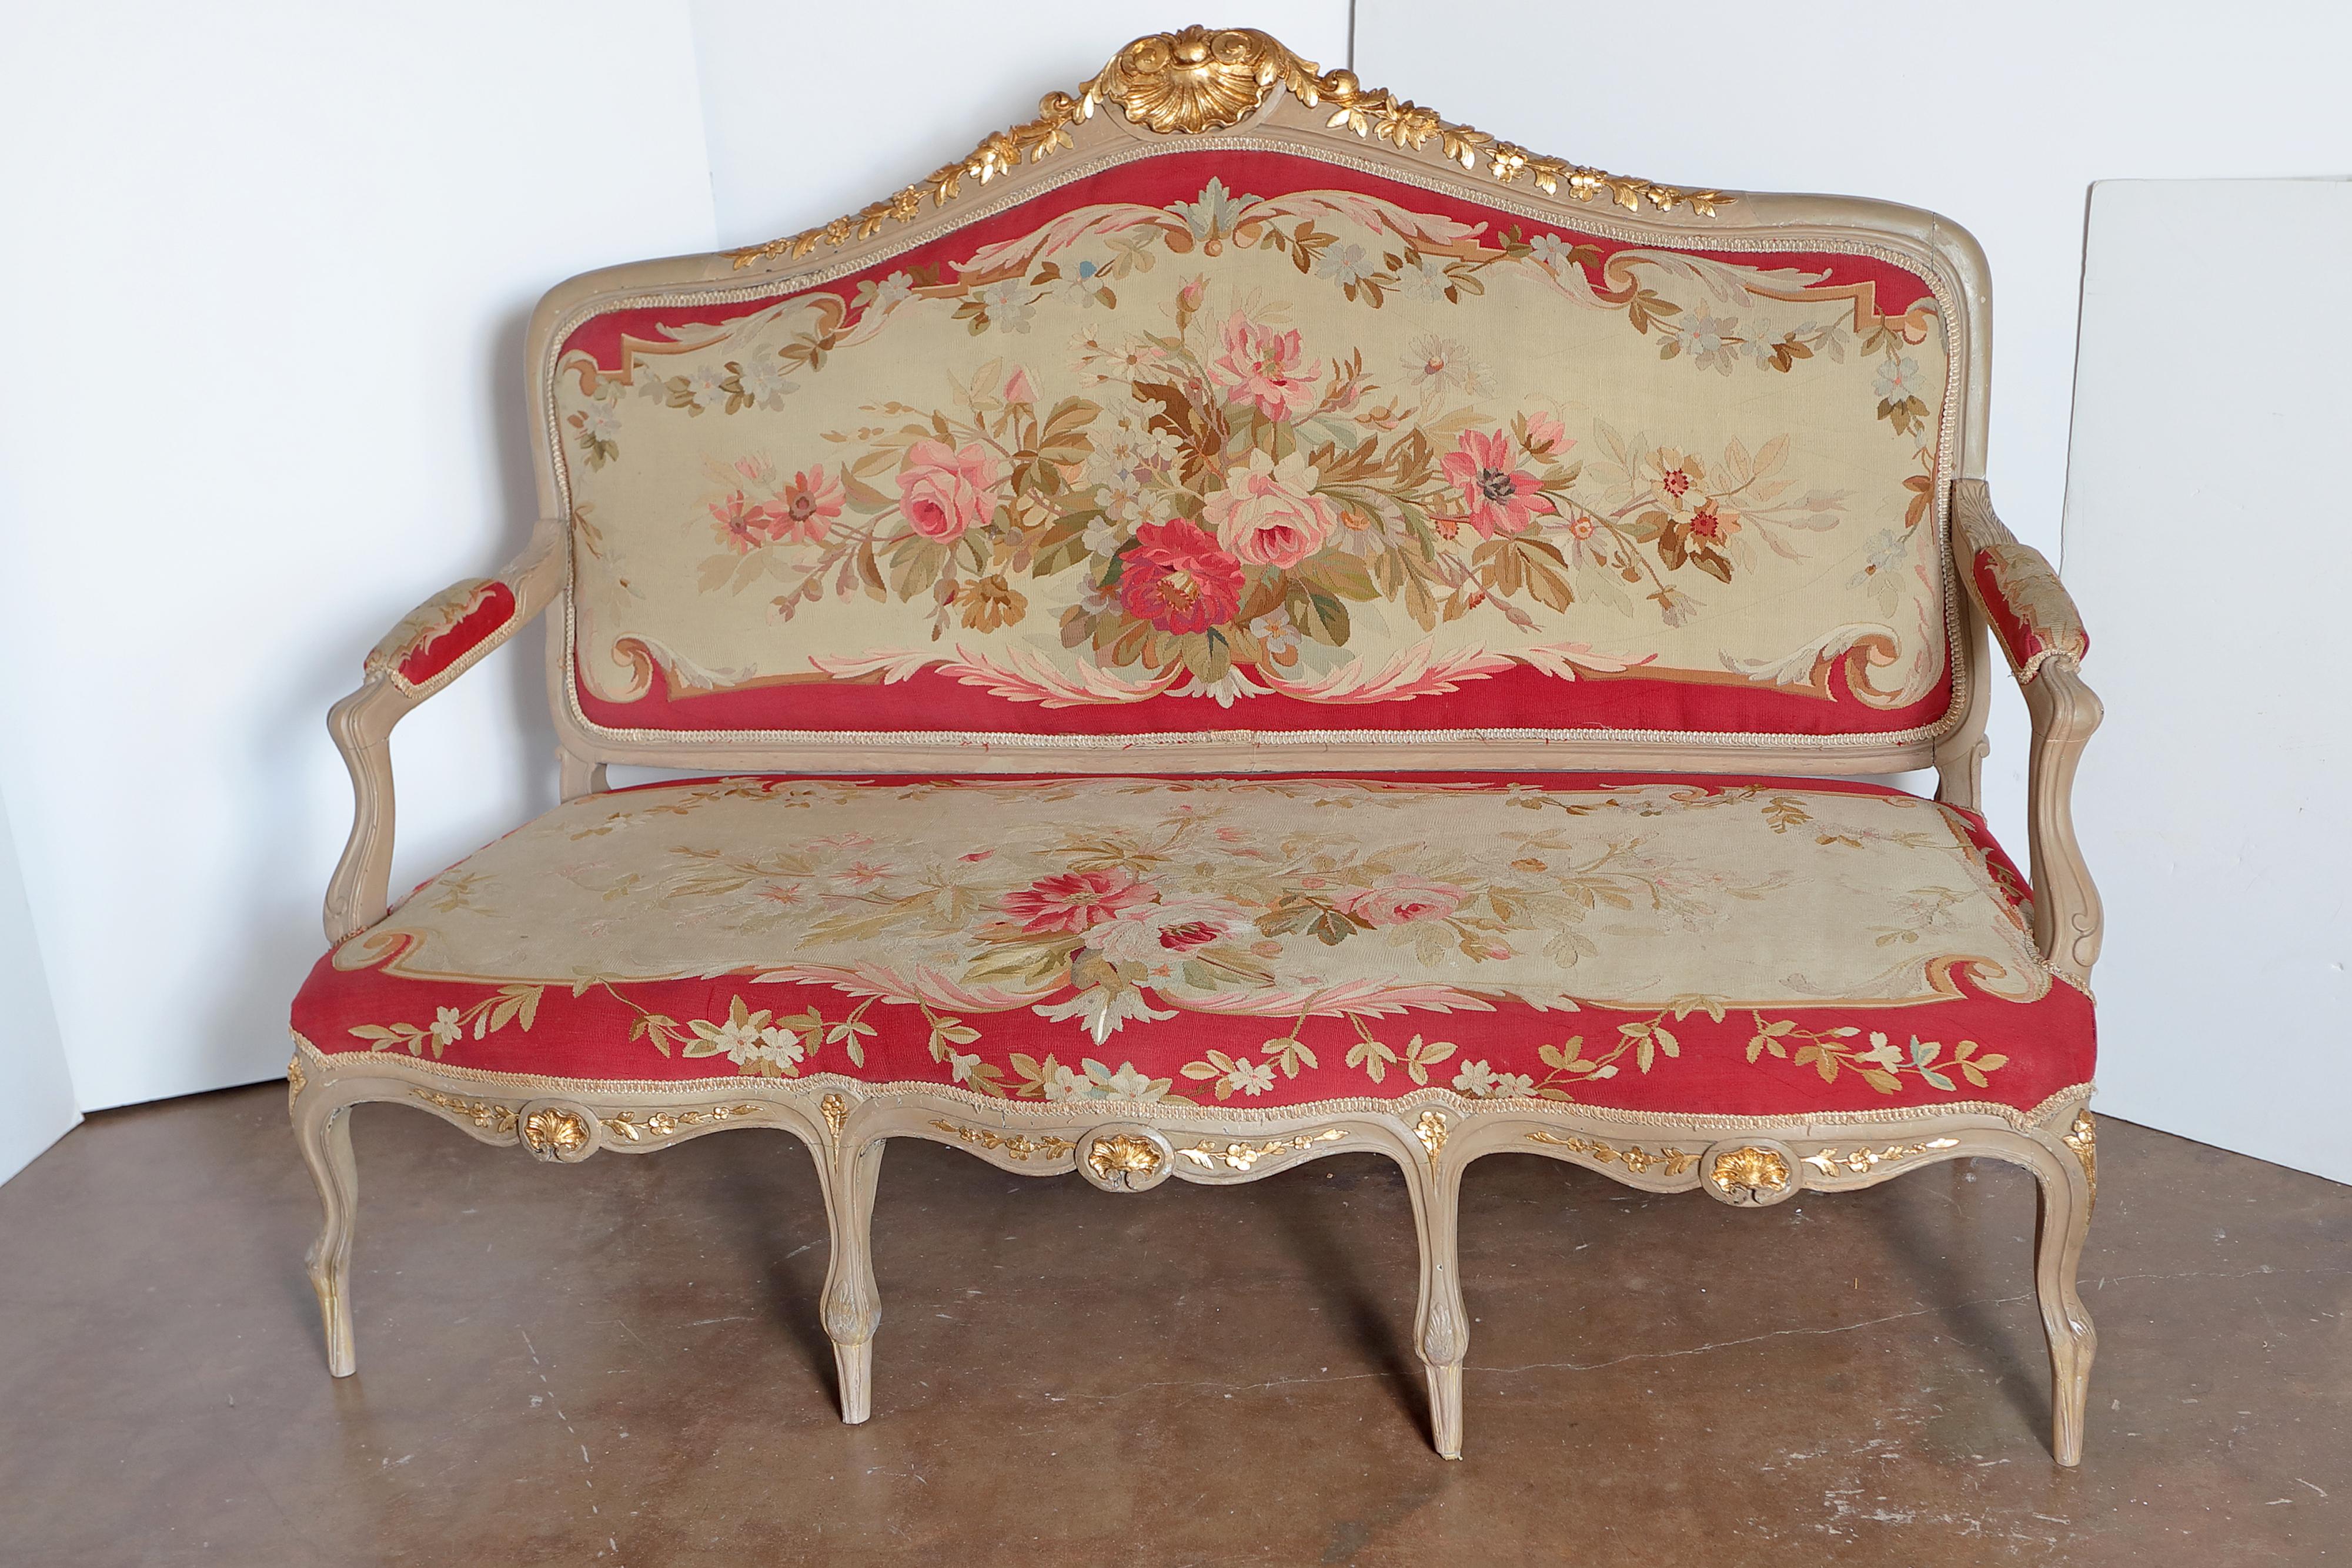 Schöne große französische Sitzgruppe aus dem 19. Jahrhundert, bestehend aus einem Sofa, 4 Sesseln und zwei Beistellstühlen. Original grau lackiert mit vergoldeten Paketdetails. Schöner Aubusson-Wandteppich mit Blumendetails.